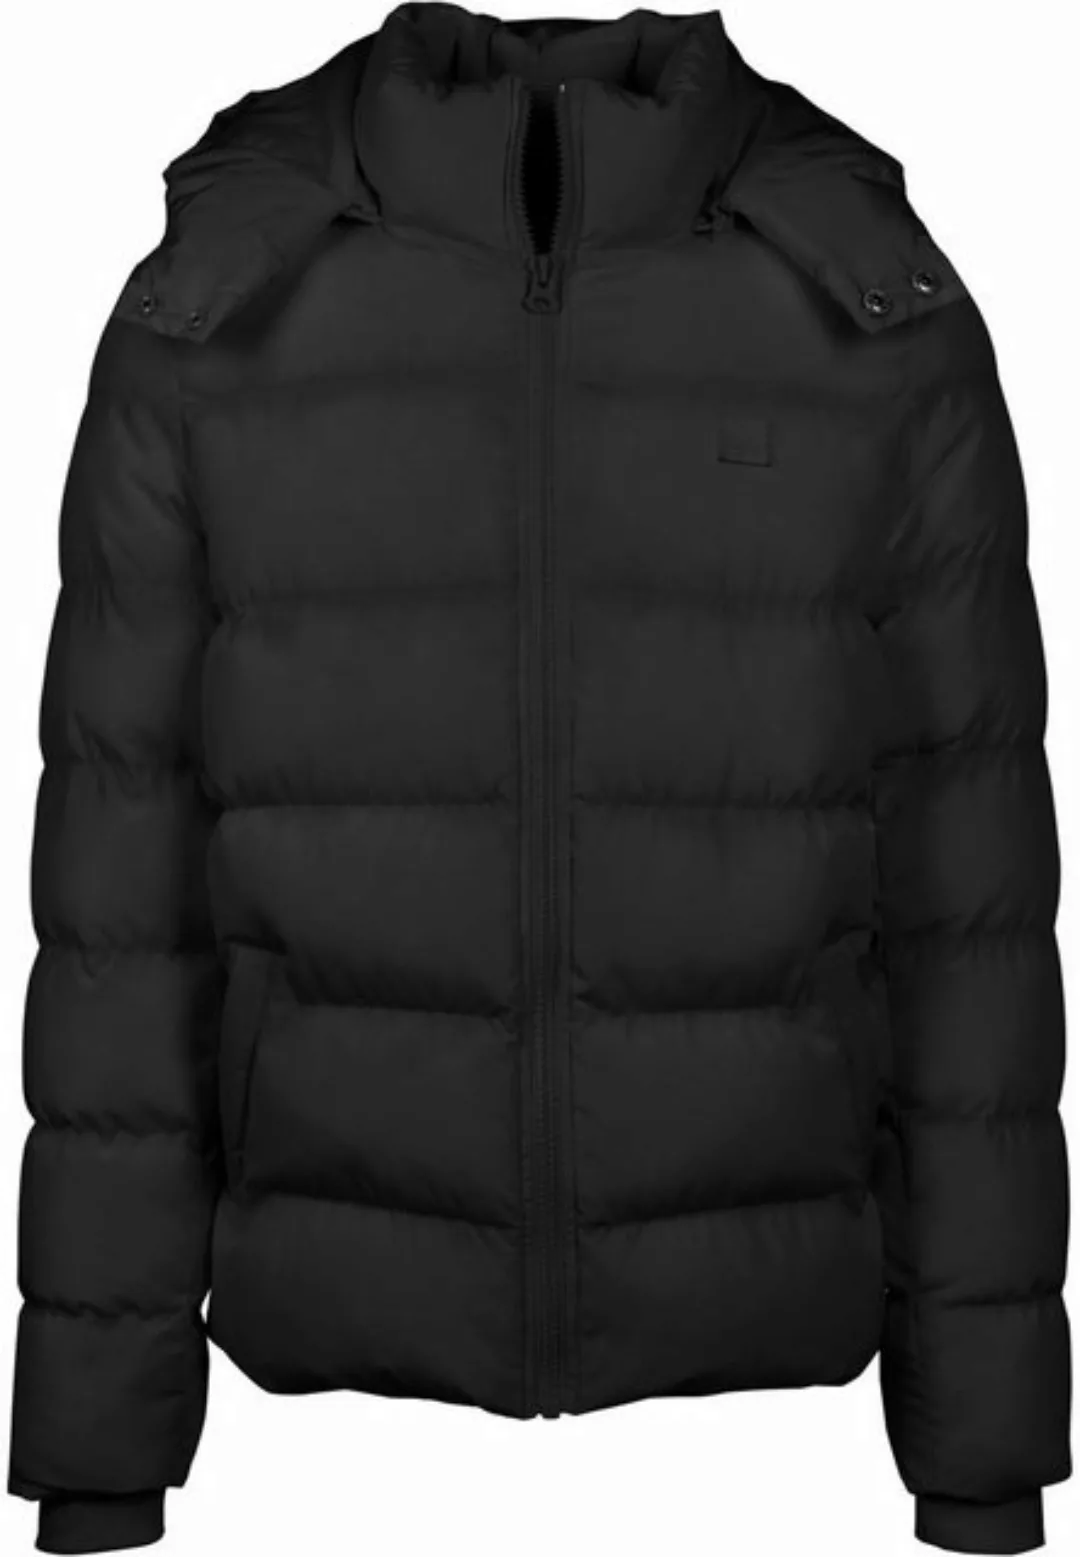 URBAN CLASSICS Winterjacke TB1807 - Hooded Puffer Jacket black L günstig online kaufen